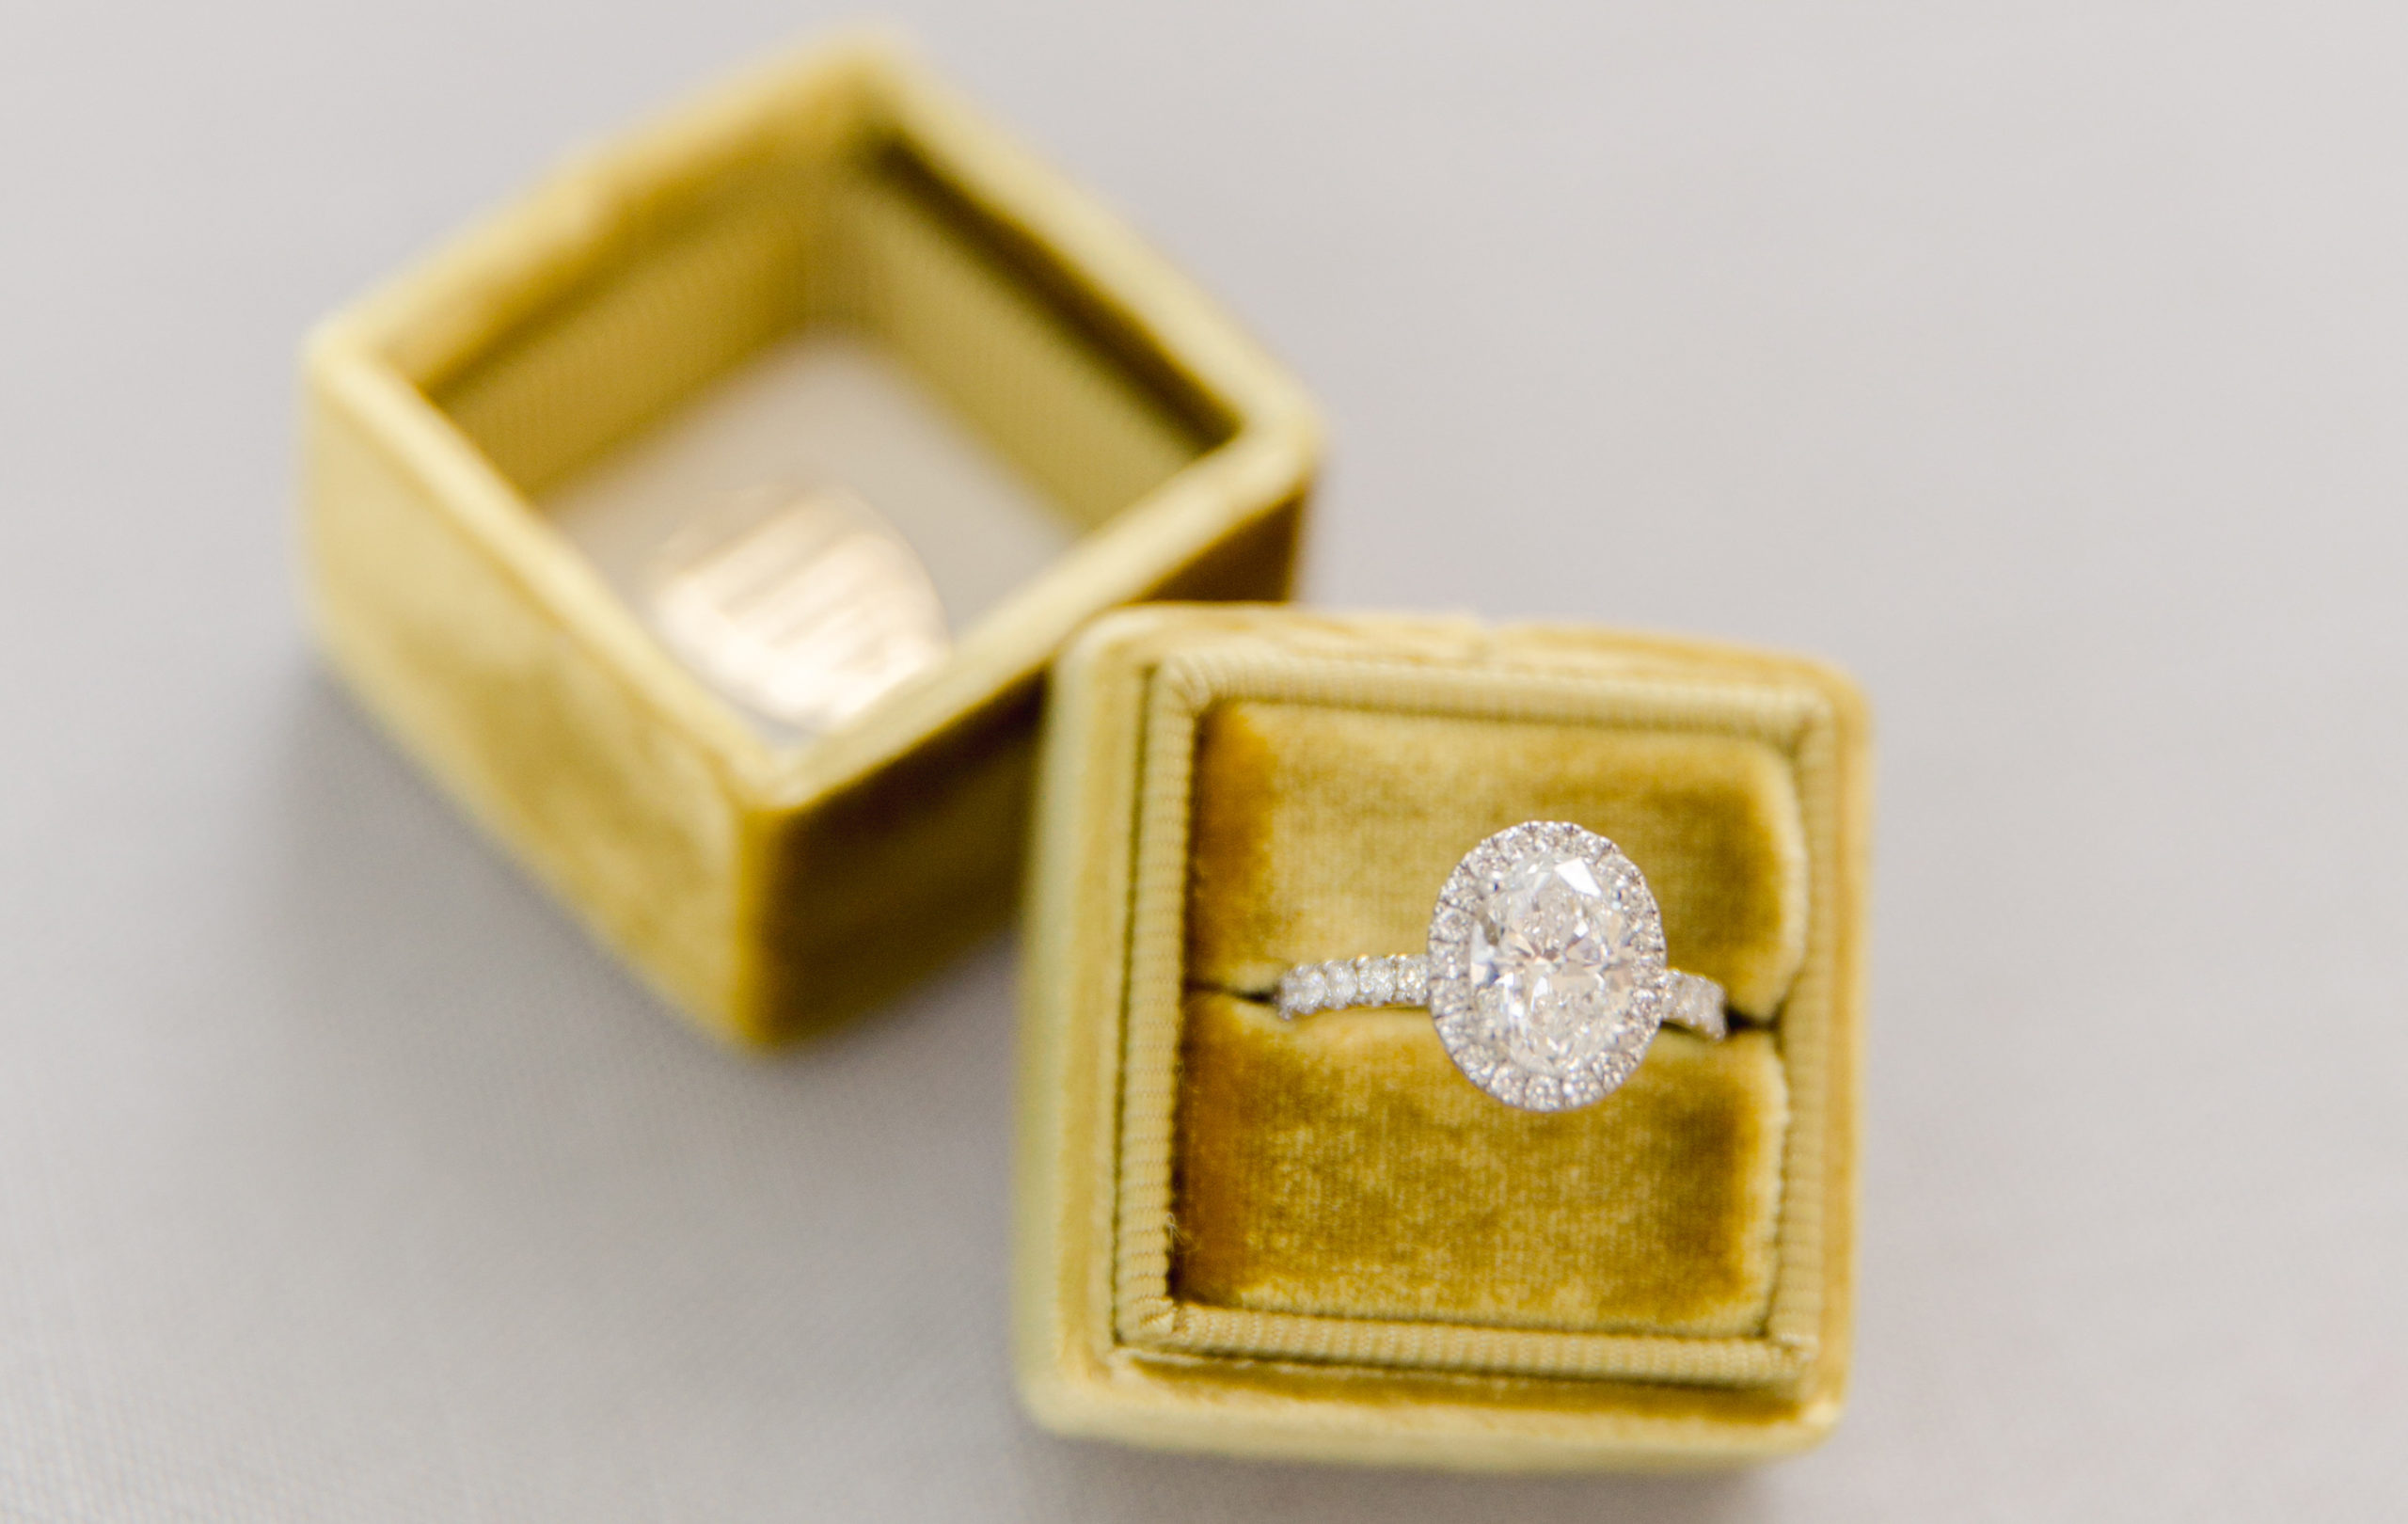 Timeless Love Weddings | Mrs box velvet wedding box and oval diamond ring